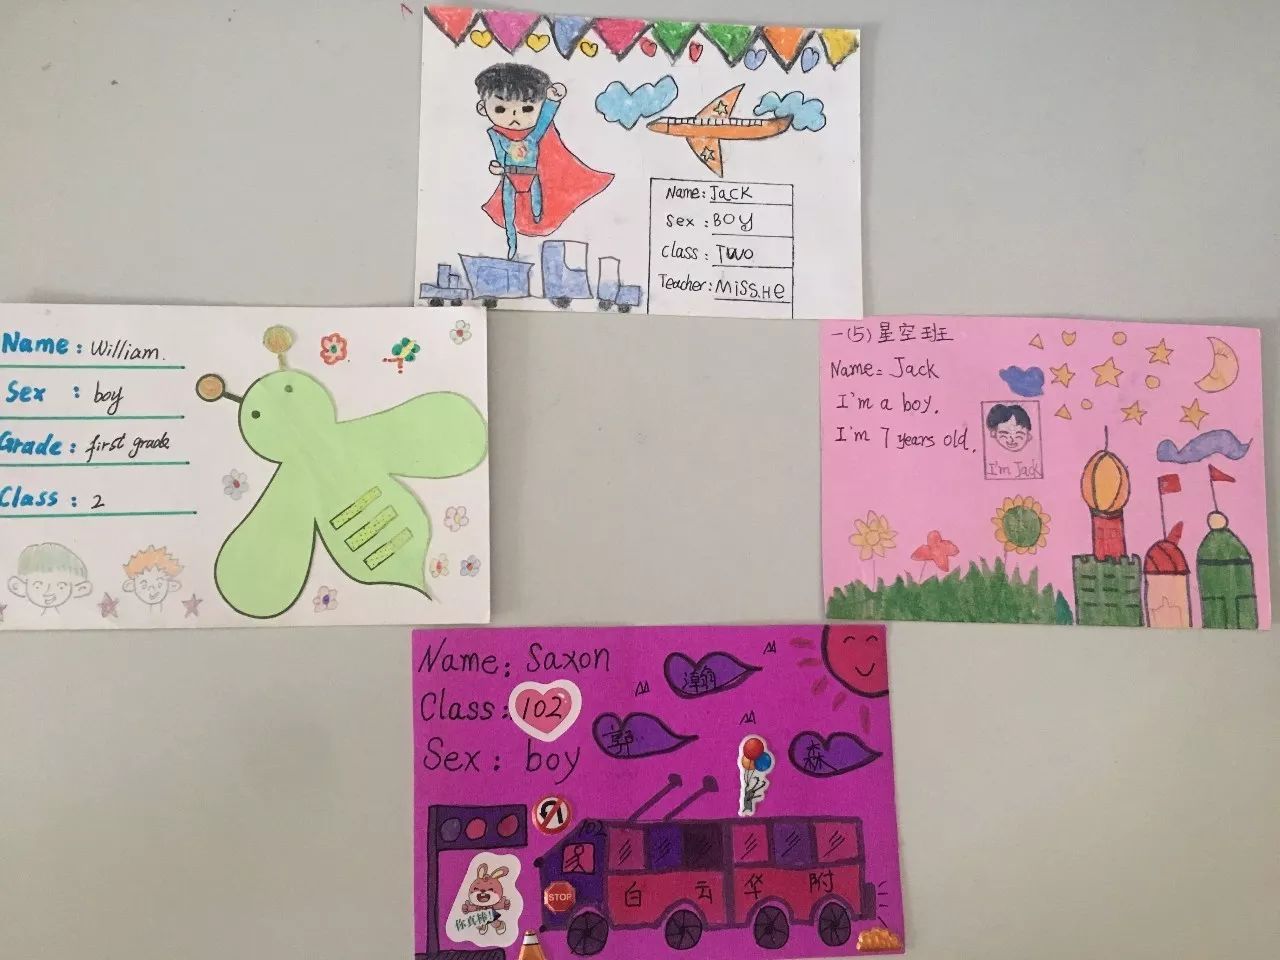 【创意作业】小学生设计英语名片,让孩子从小喜欢英语!